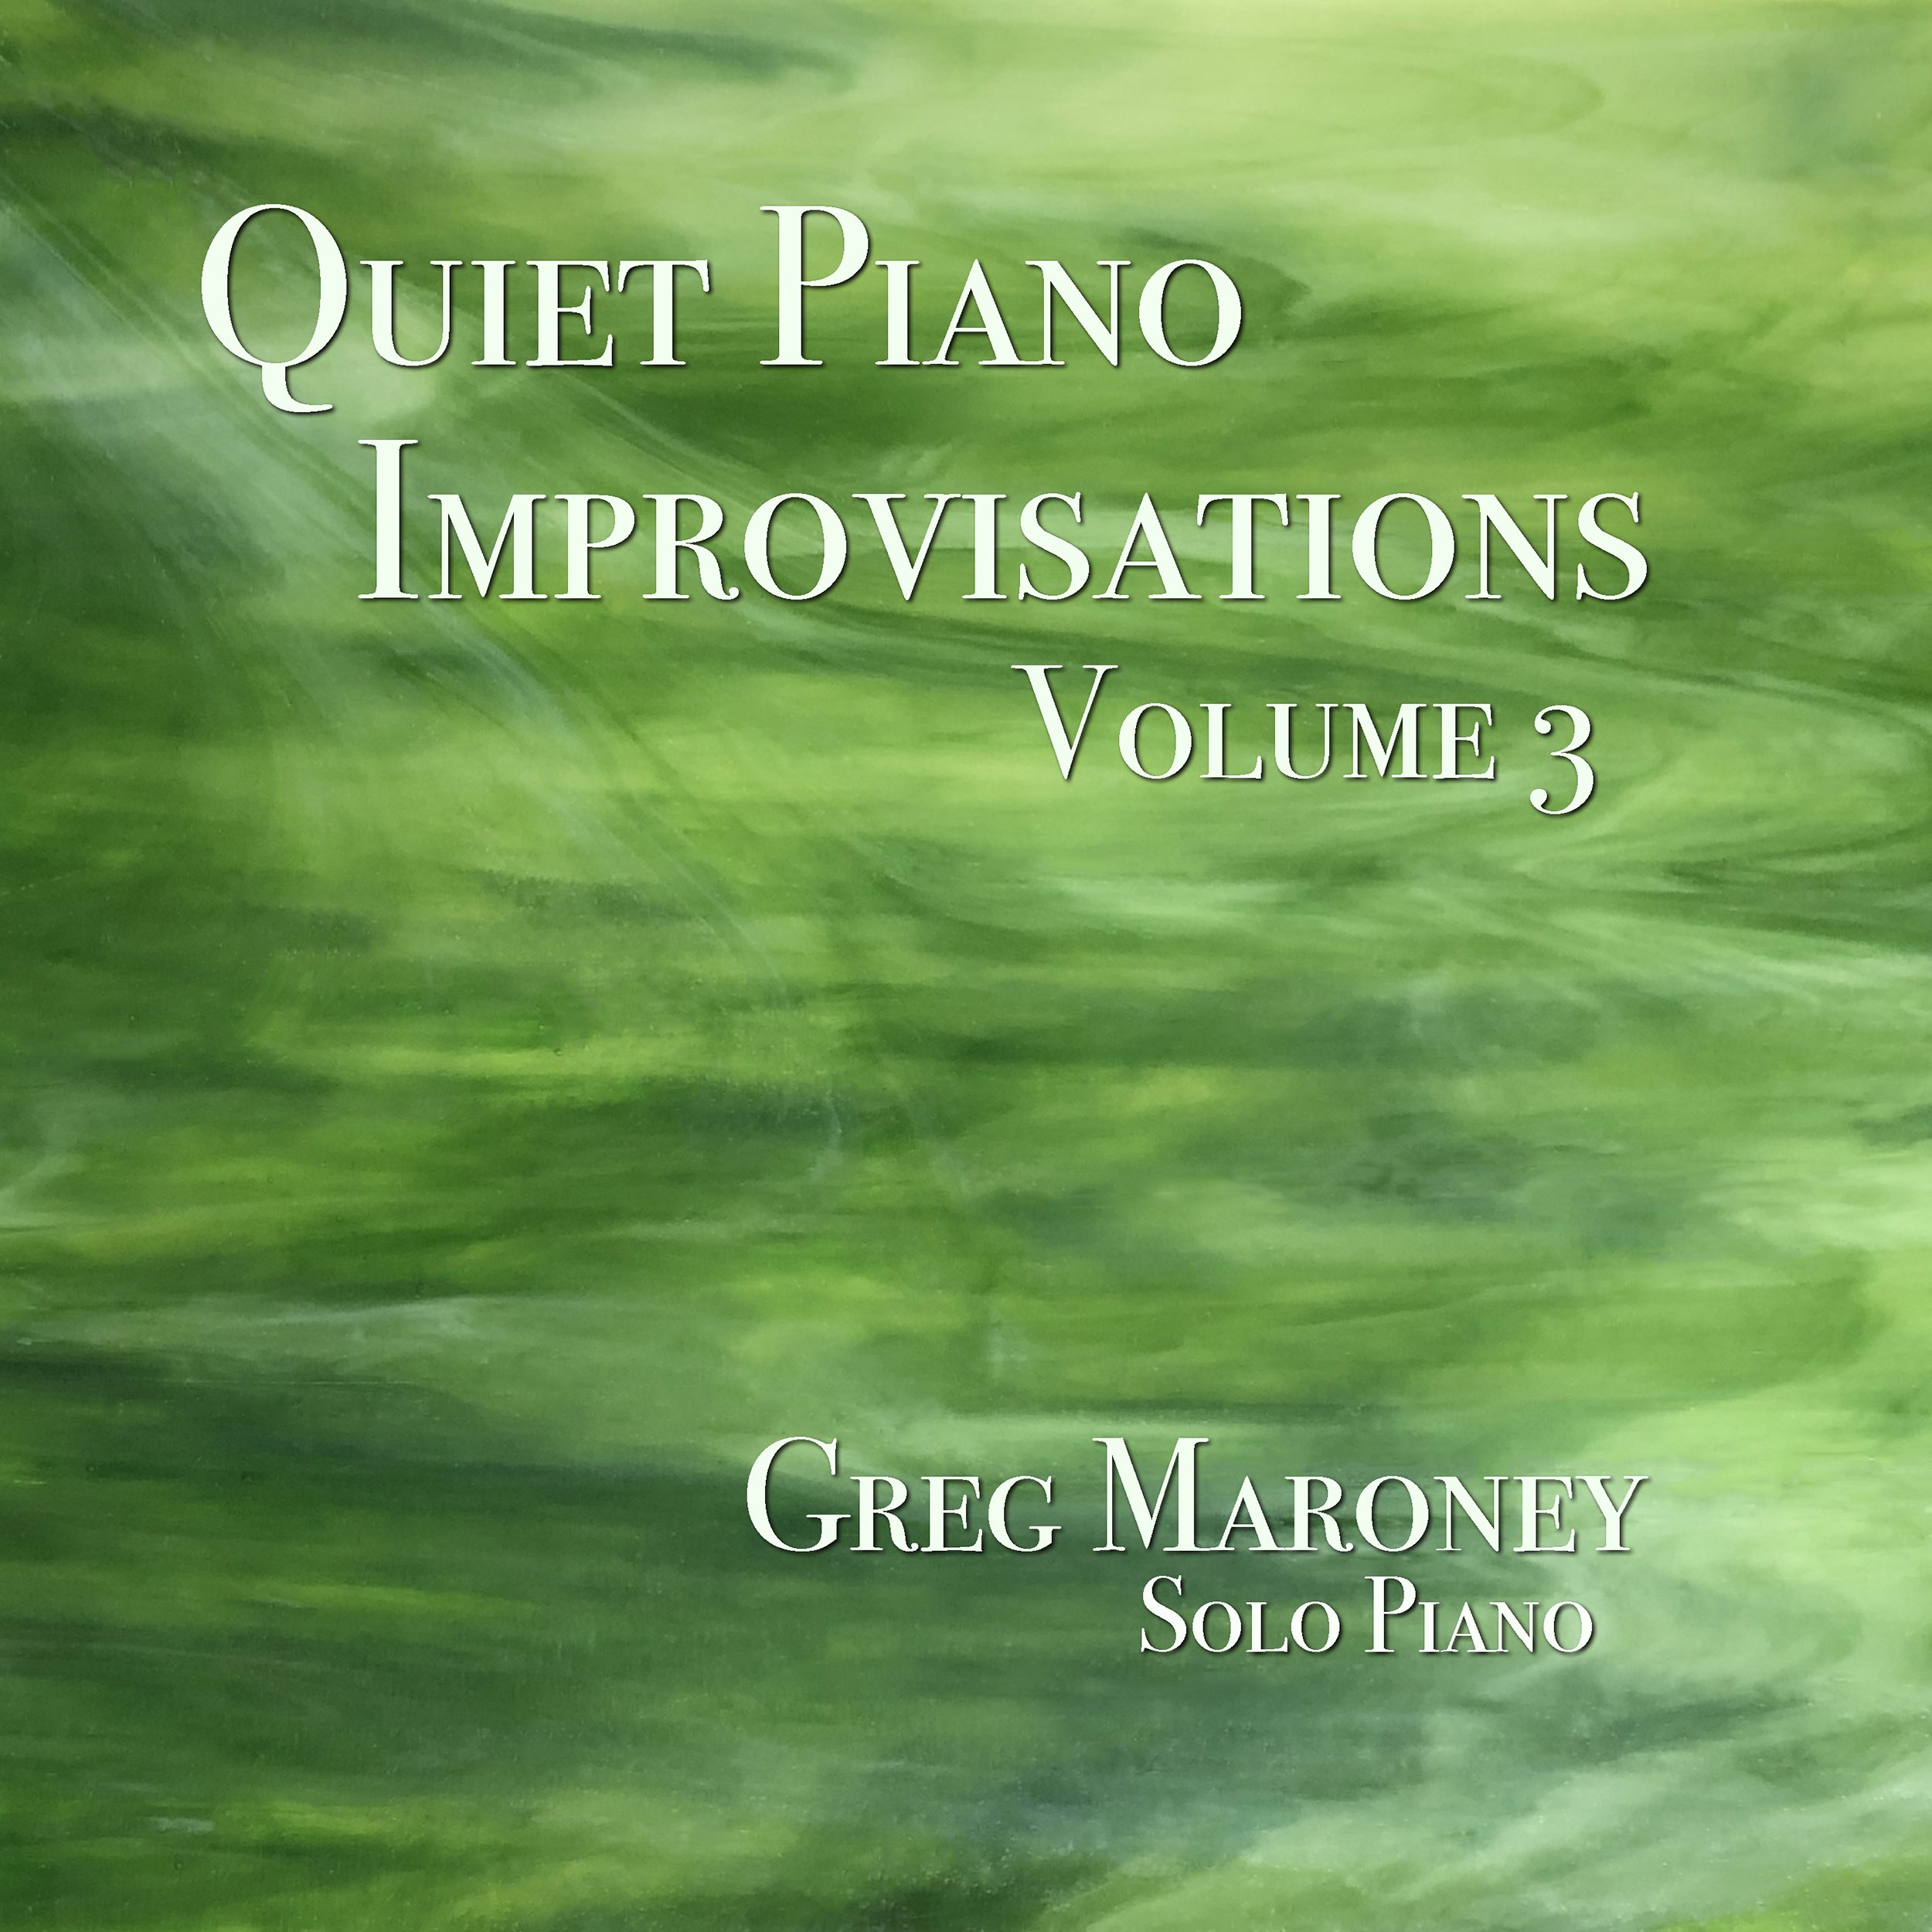 Greg Maroney ~ Solo Piano Music